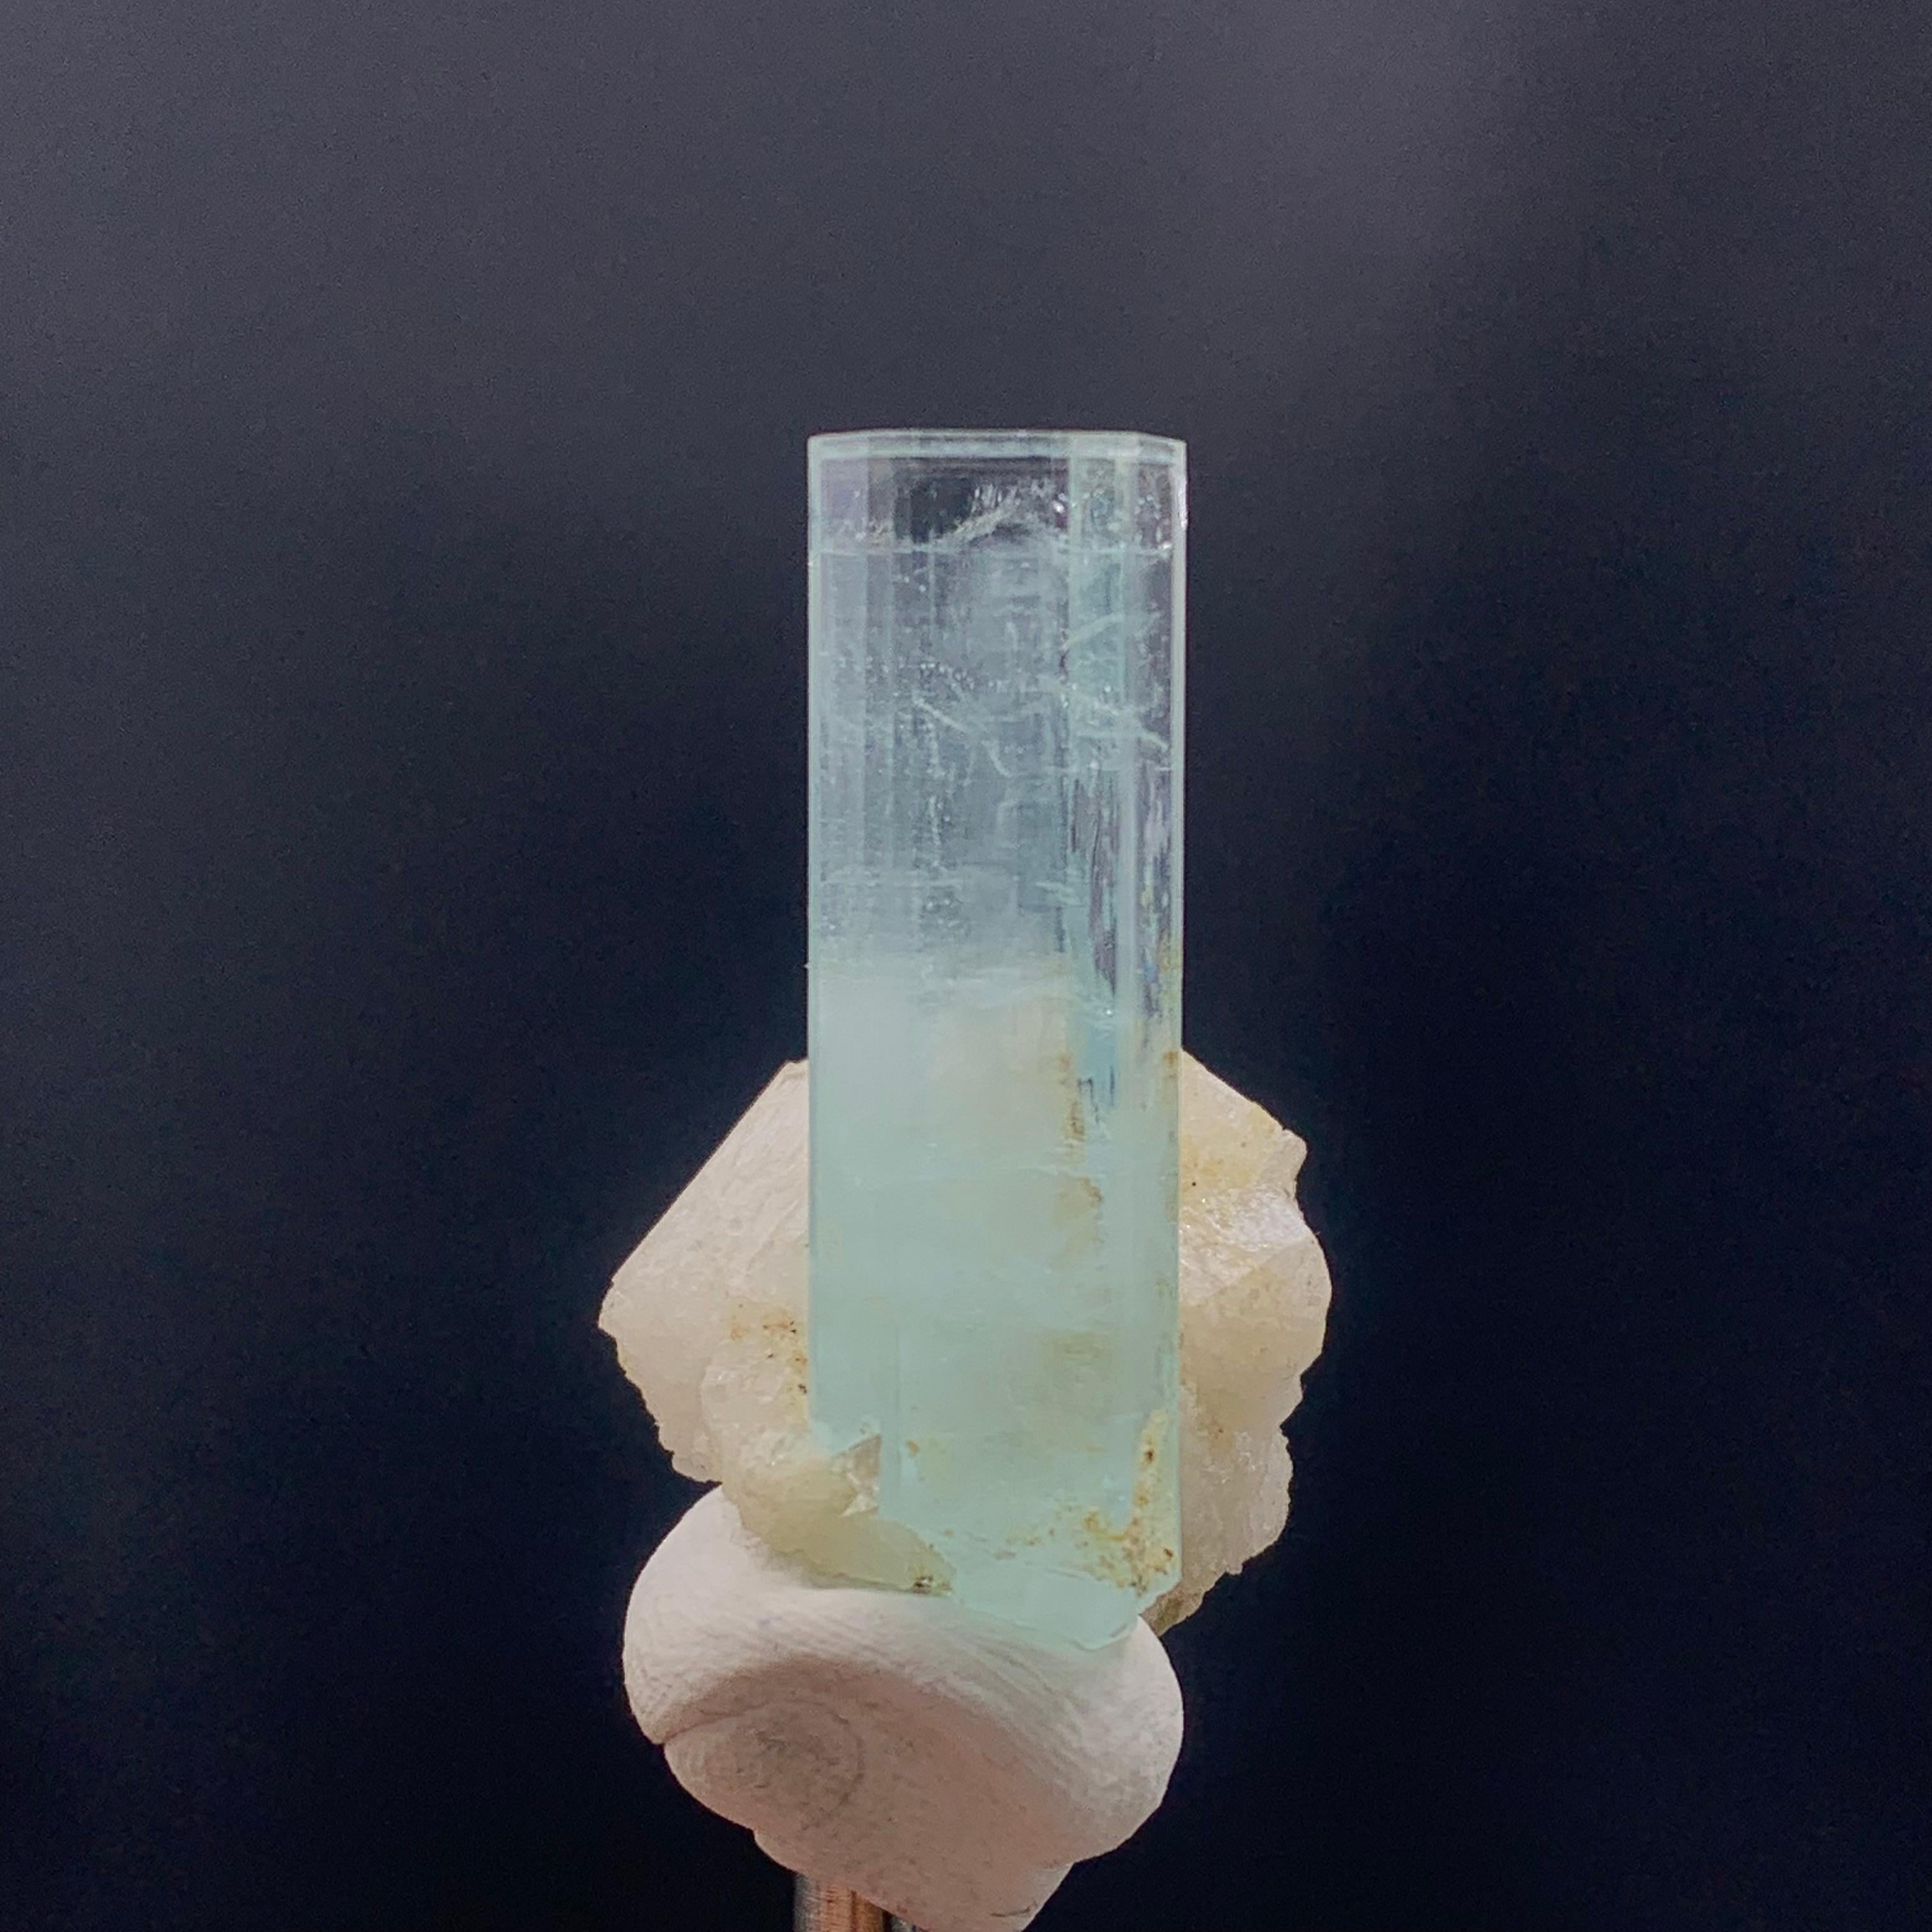 aquamarine specimens